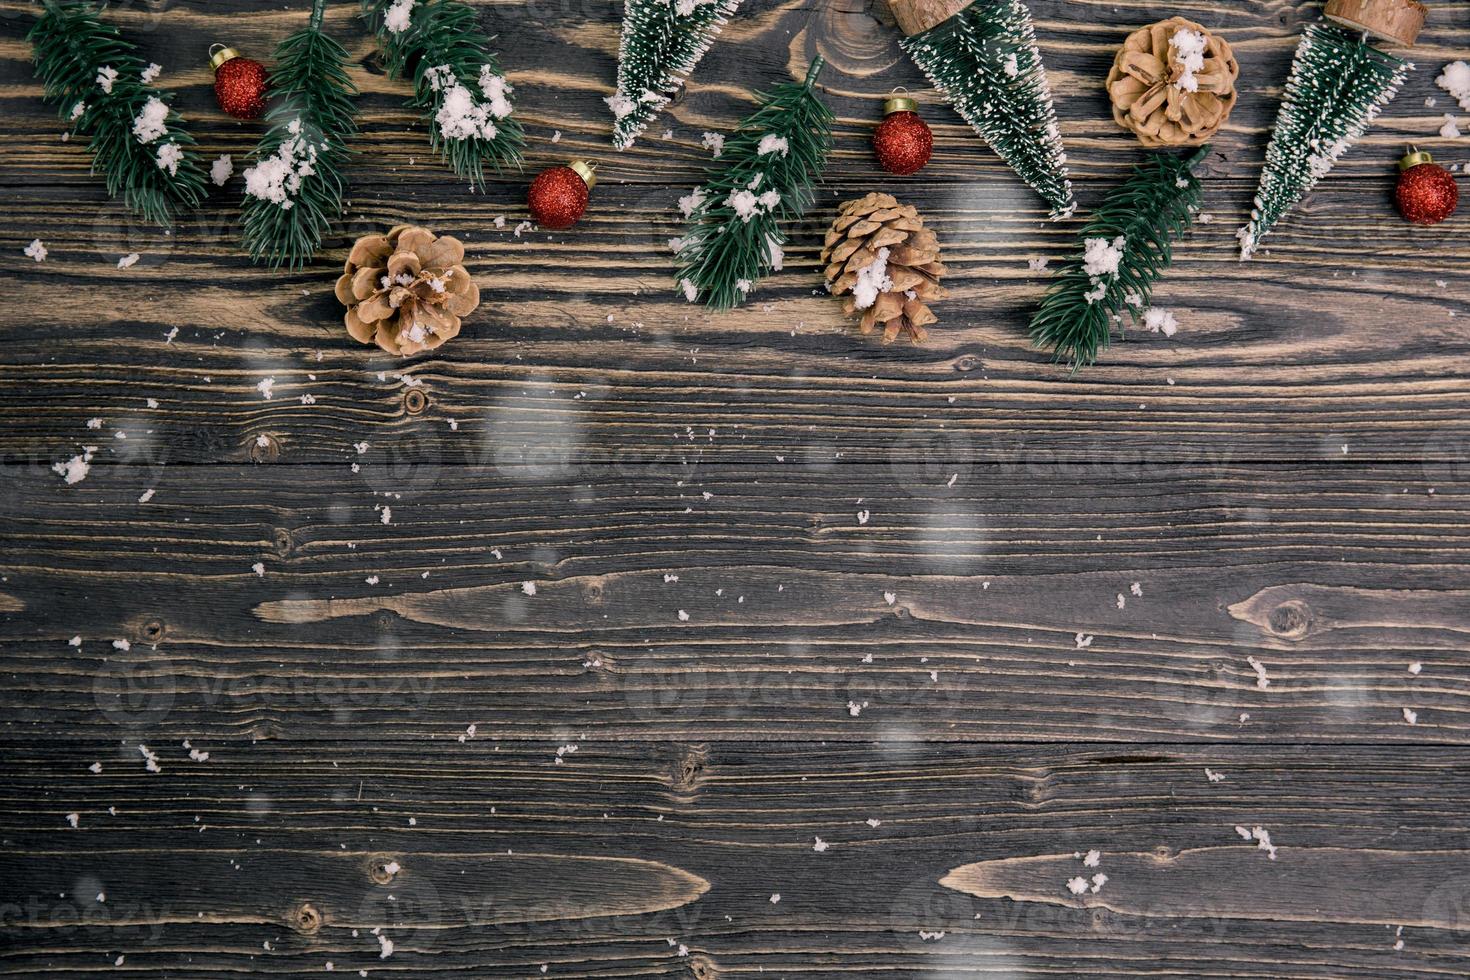 decoración de composición navideña sobre fondo de madera, año nuevo y navidad o aniversario con regalos en mesa de madera en temporada, vista superior o puesta plana. foto